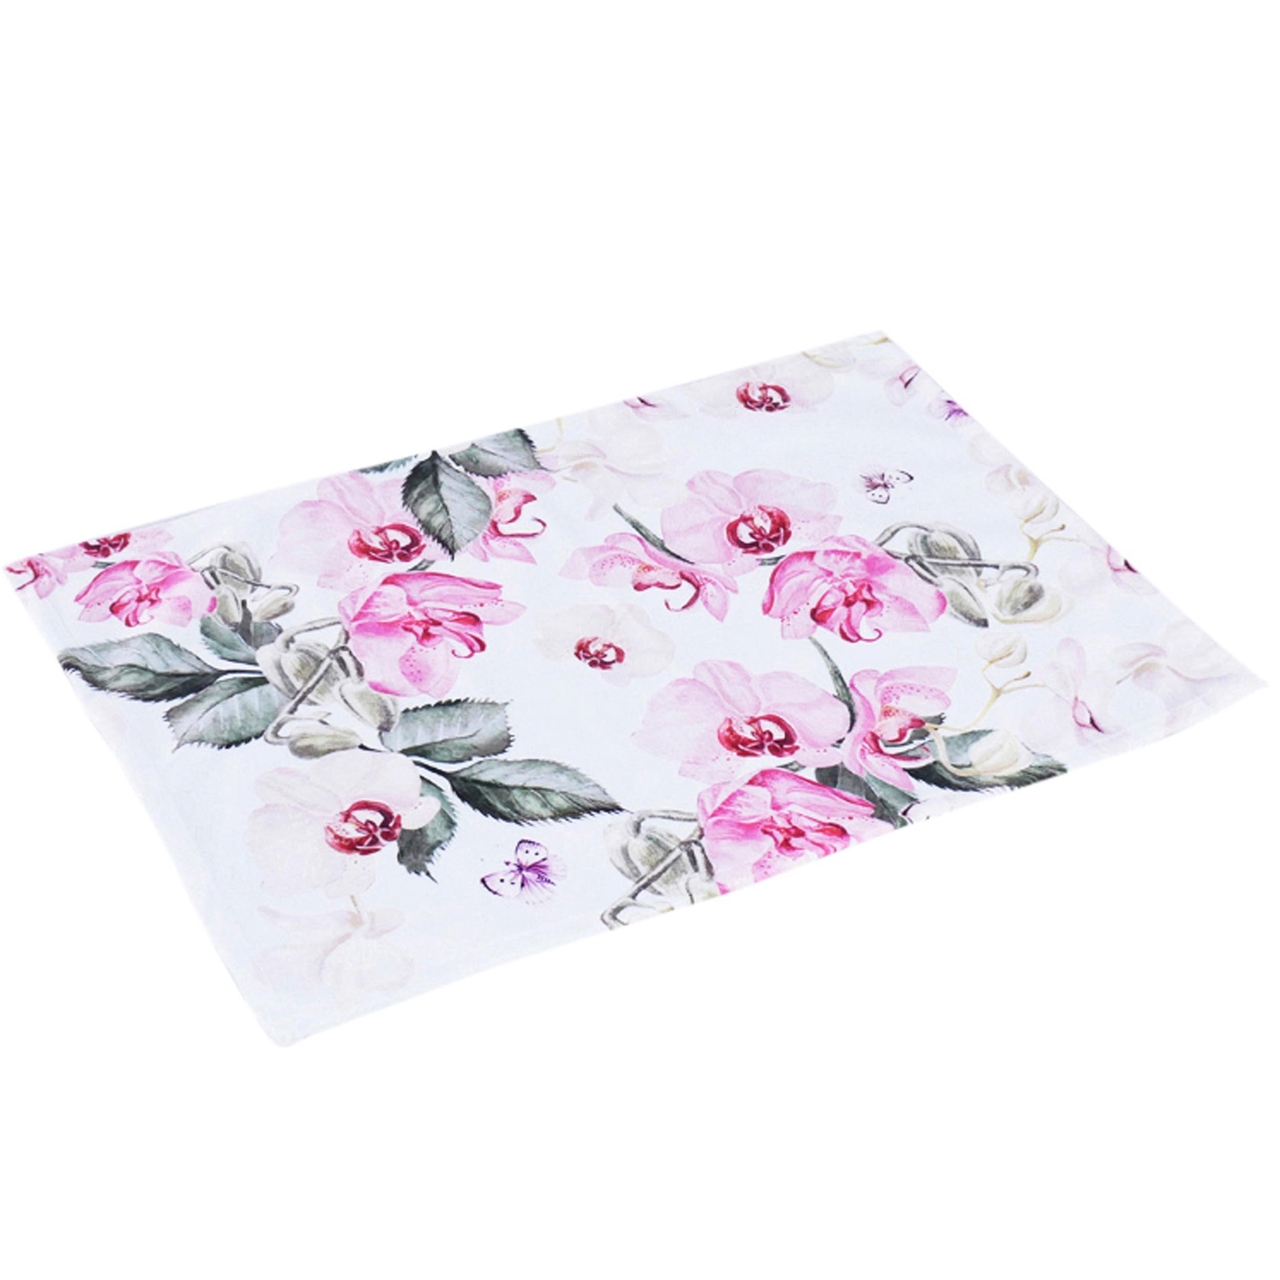 Dekoratief | Placemat wit m/roze bloemen, fluweel, 30x45cm | A234019